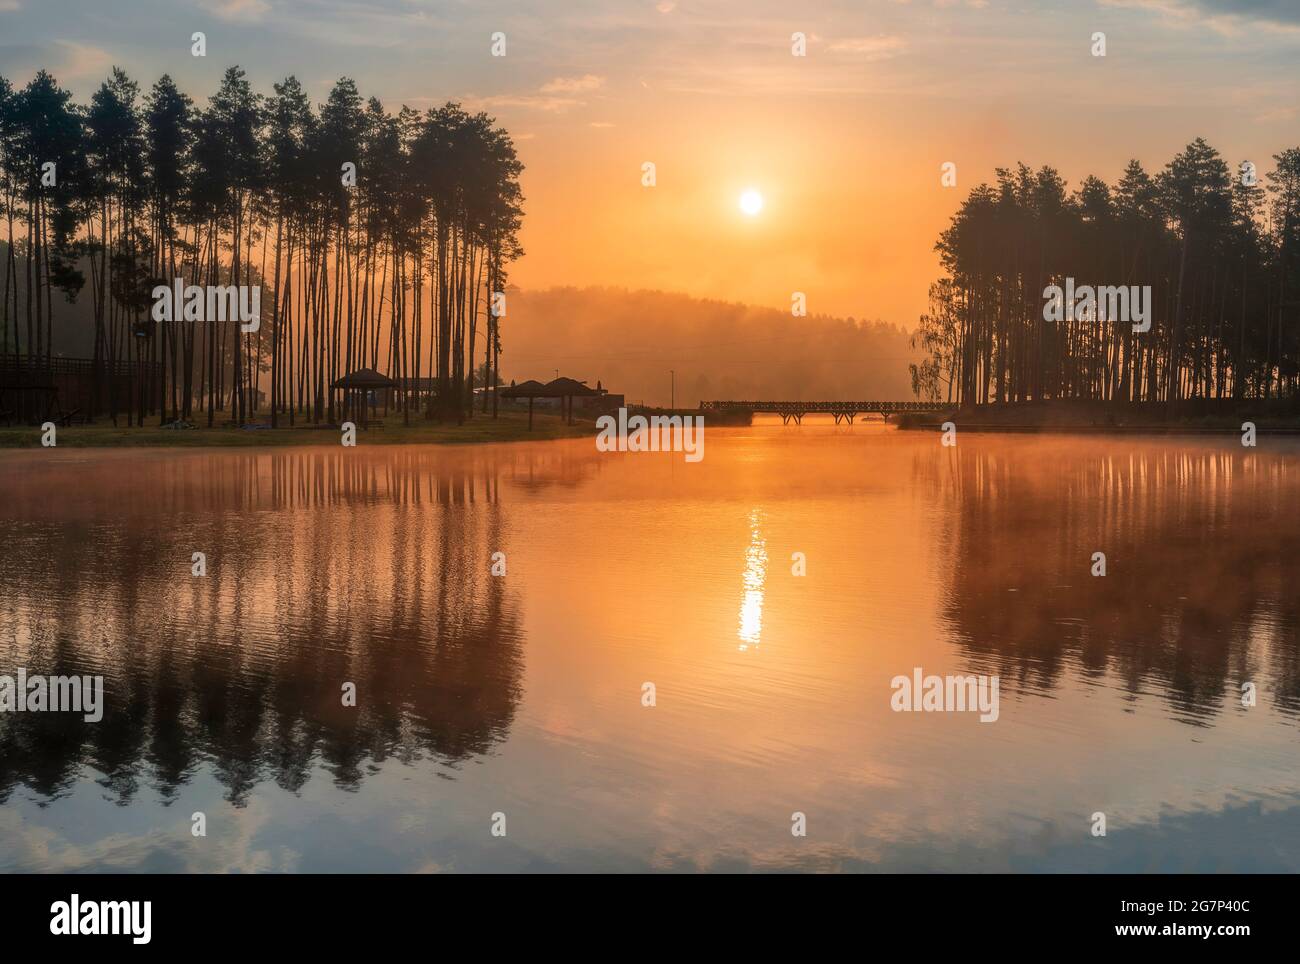 Schöner Sonnenaufgang über dem See in Krasnobród, Roztocze, Polen. Das Wasser ist im Morgenlicht von Bäumen umgeben. Stockfoto